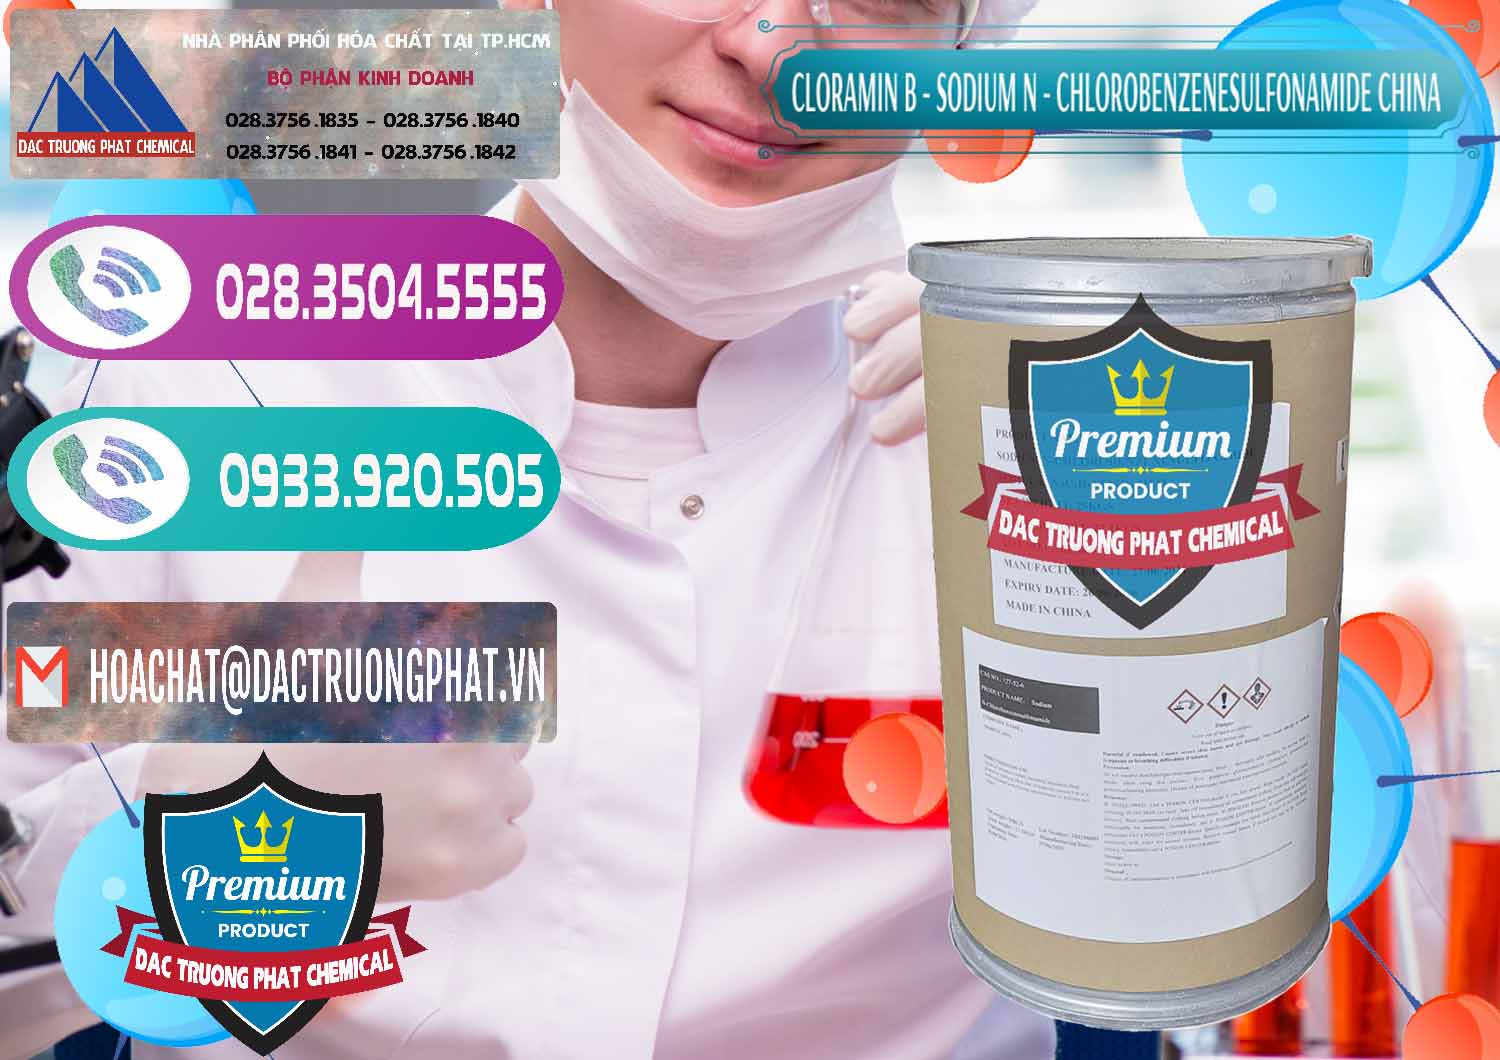 Công ty chuyên bán _ cung ứng Cloramin B Khử Trùng, Diệt Khuẩn Trung Quốc China - 0298 - Đơn vị chuyên bán - phân phối hóa chất tại TP.HCM - hoachatxulynuoc.com